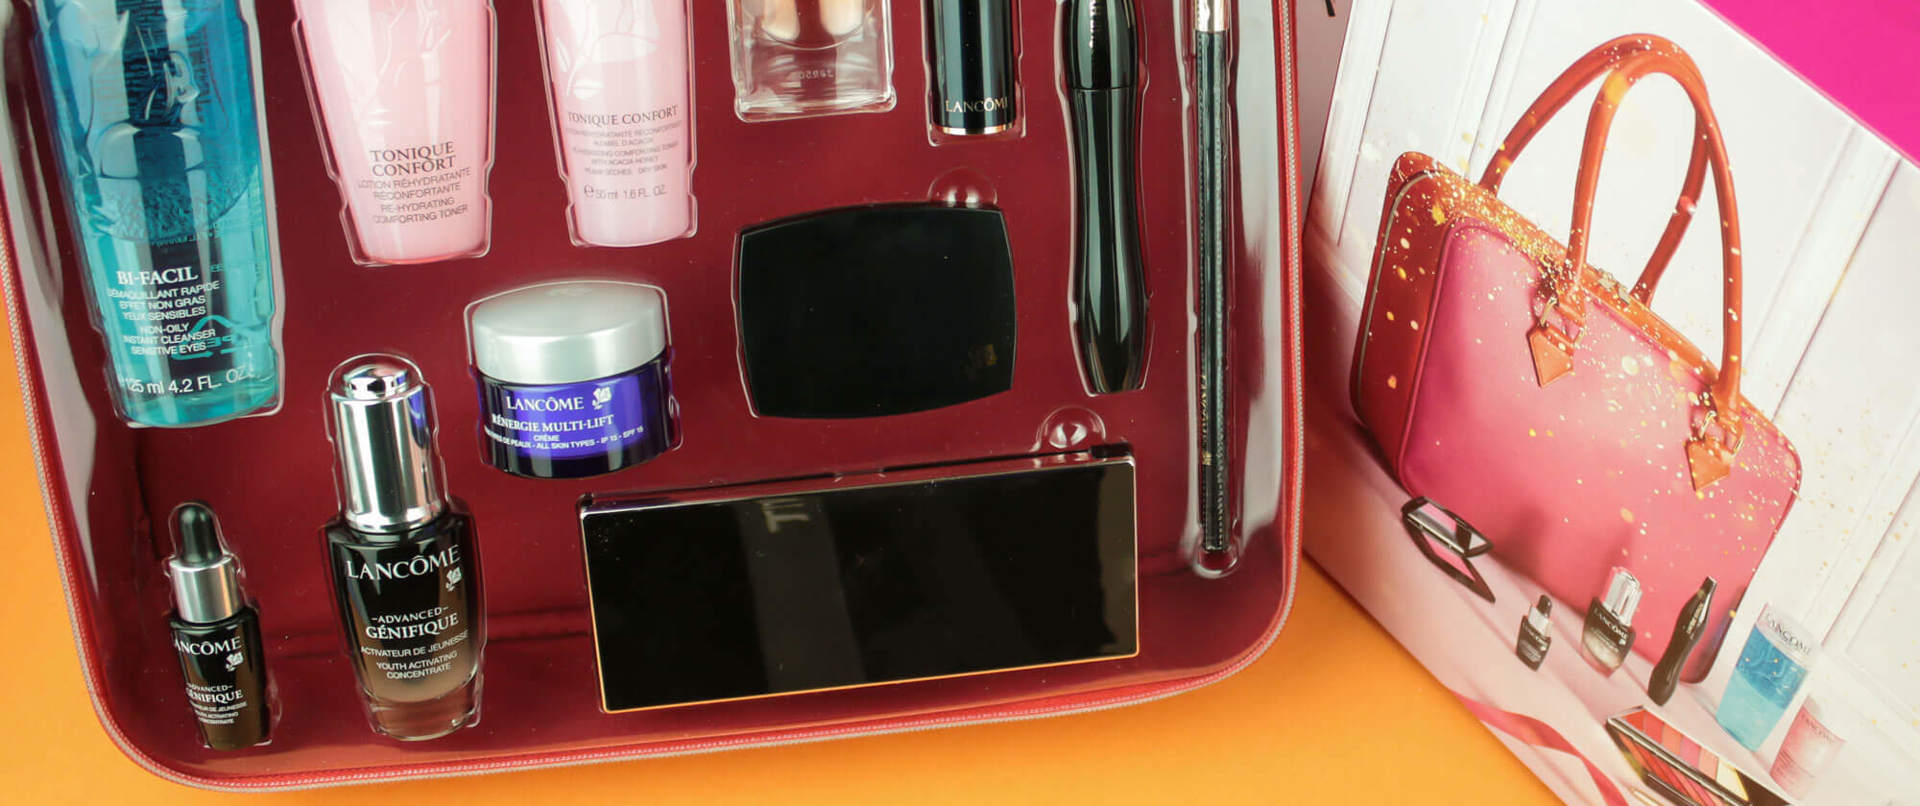 Markalardan Gelenler: Lancôme Beauty Box ile Kendimizi Şımartıyoruz!